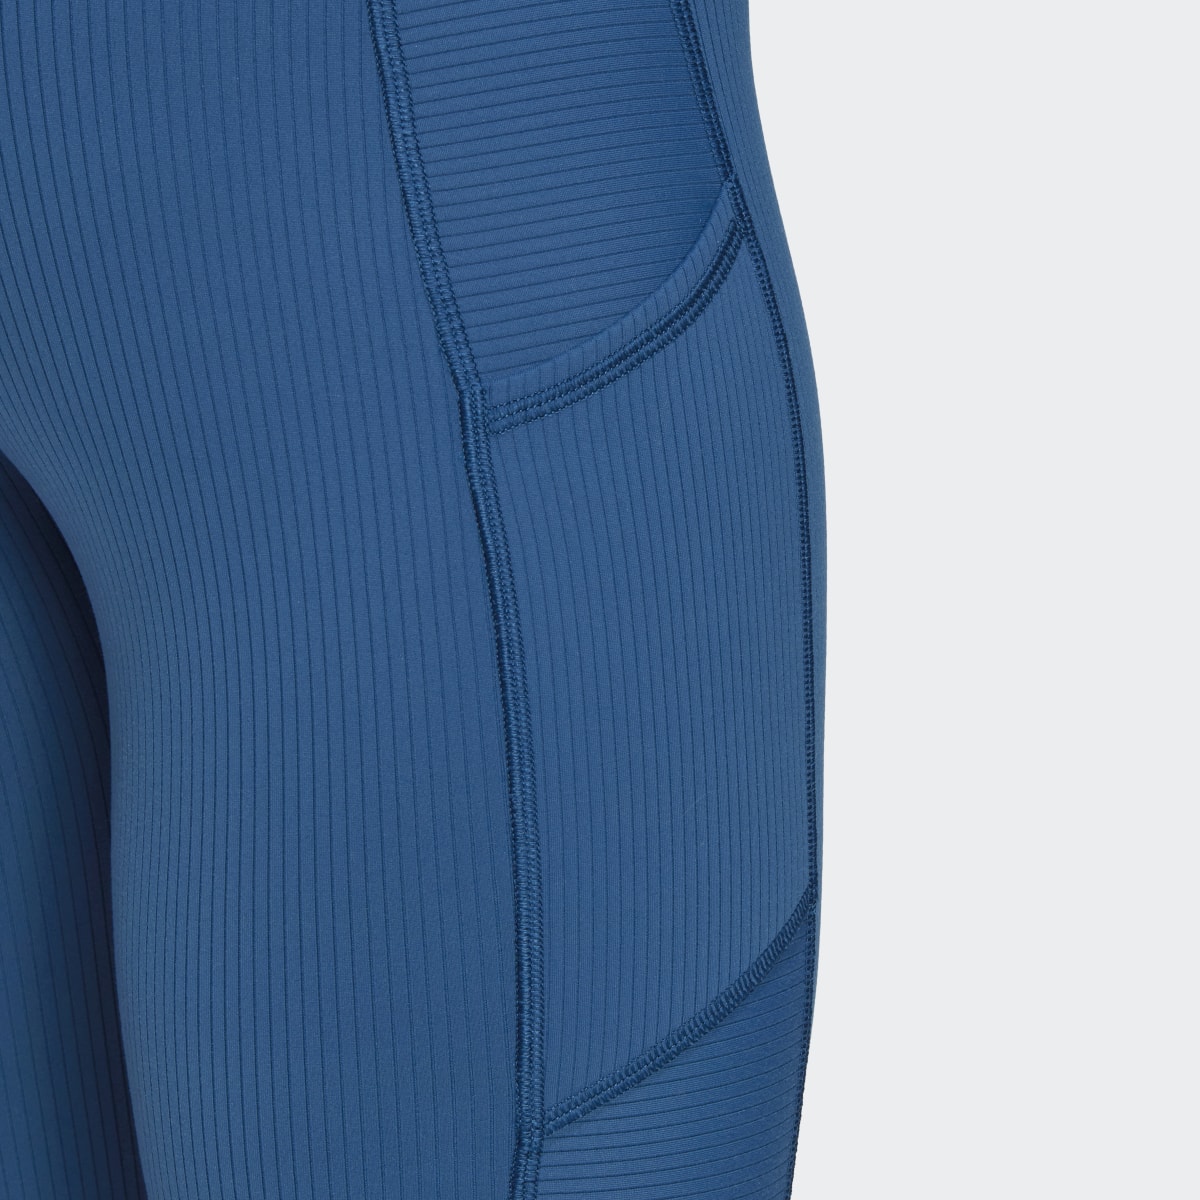 Adidas Leggings Caneladas com Cintura Supersubida para Ioga Luxe Wind. 6